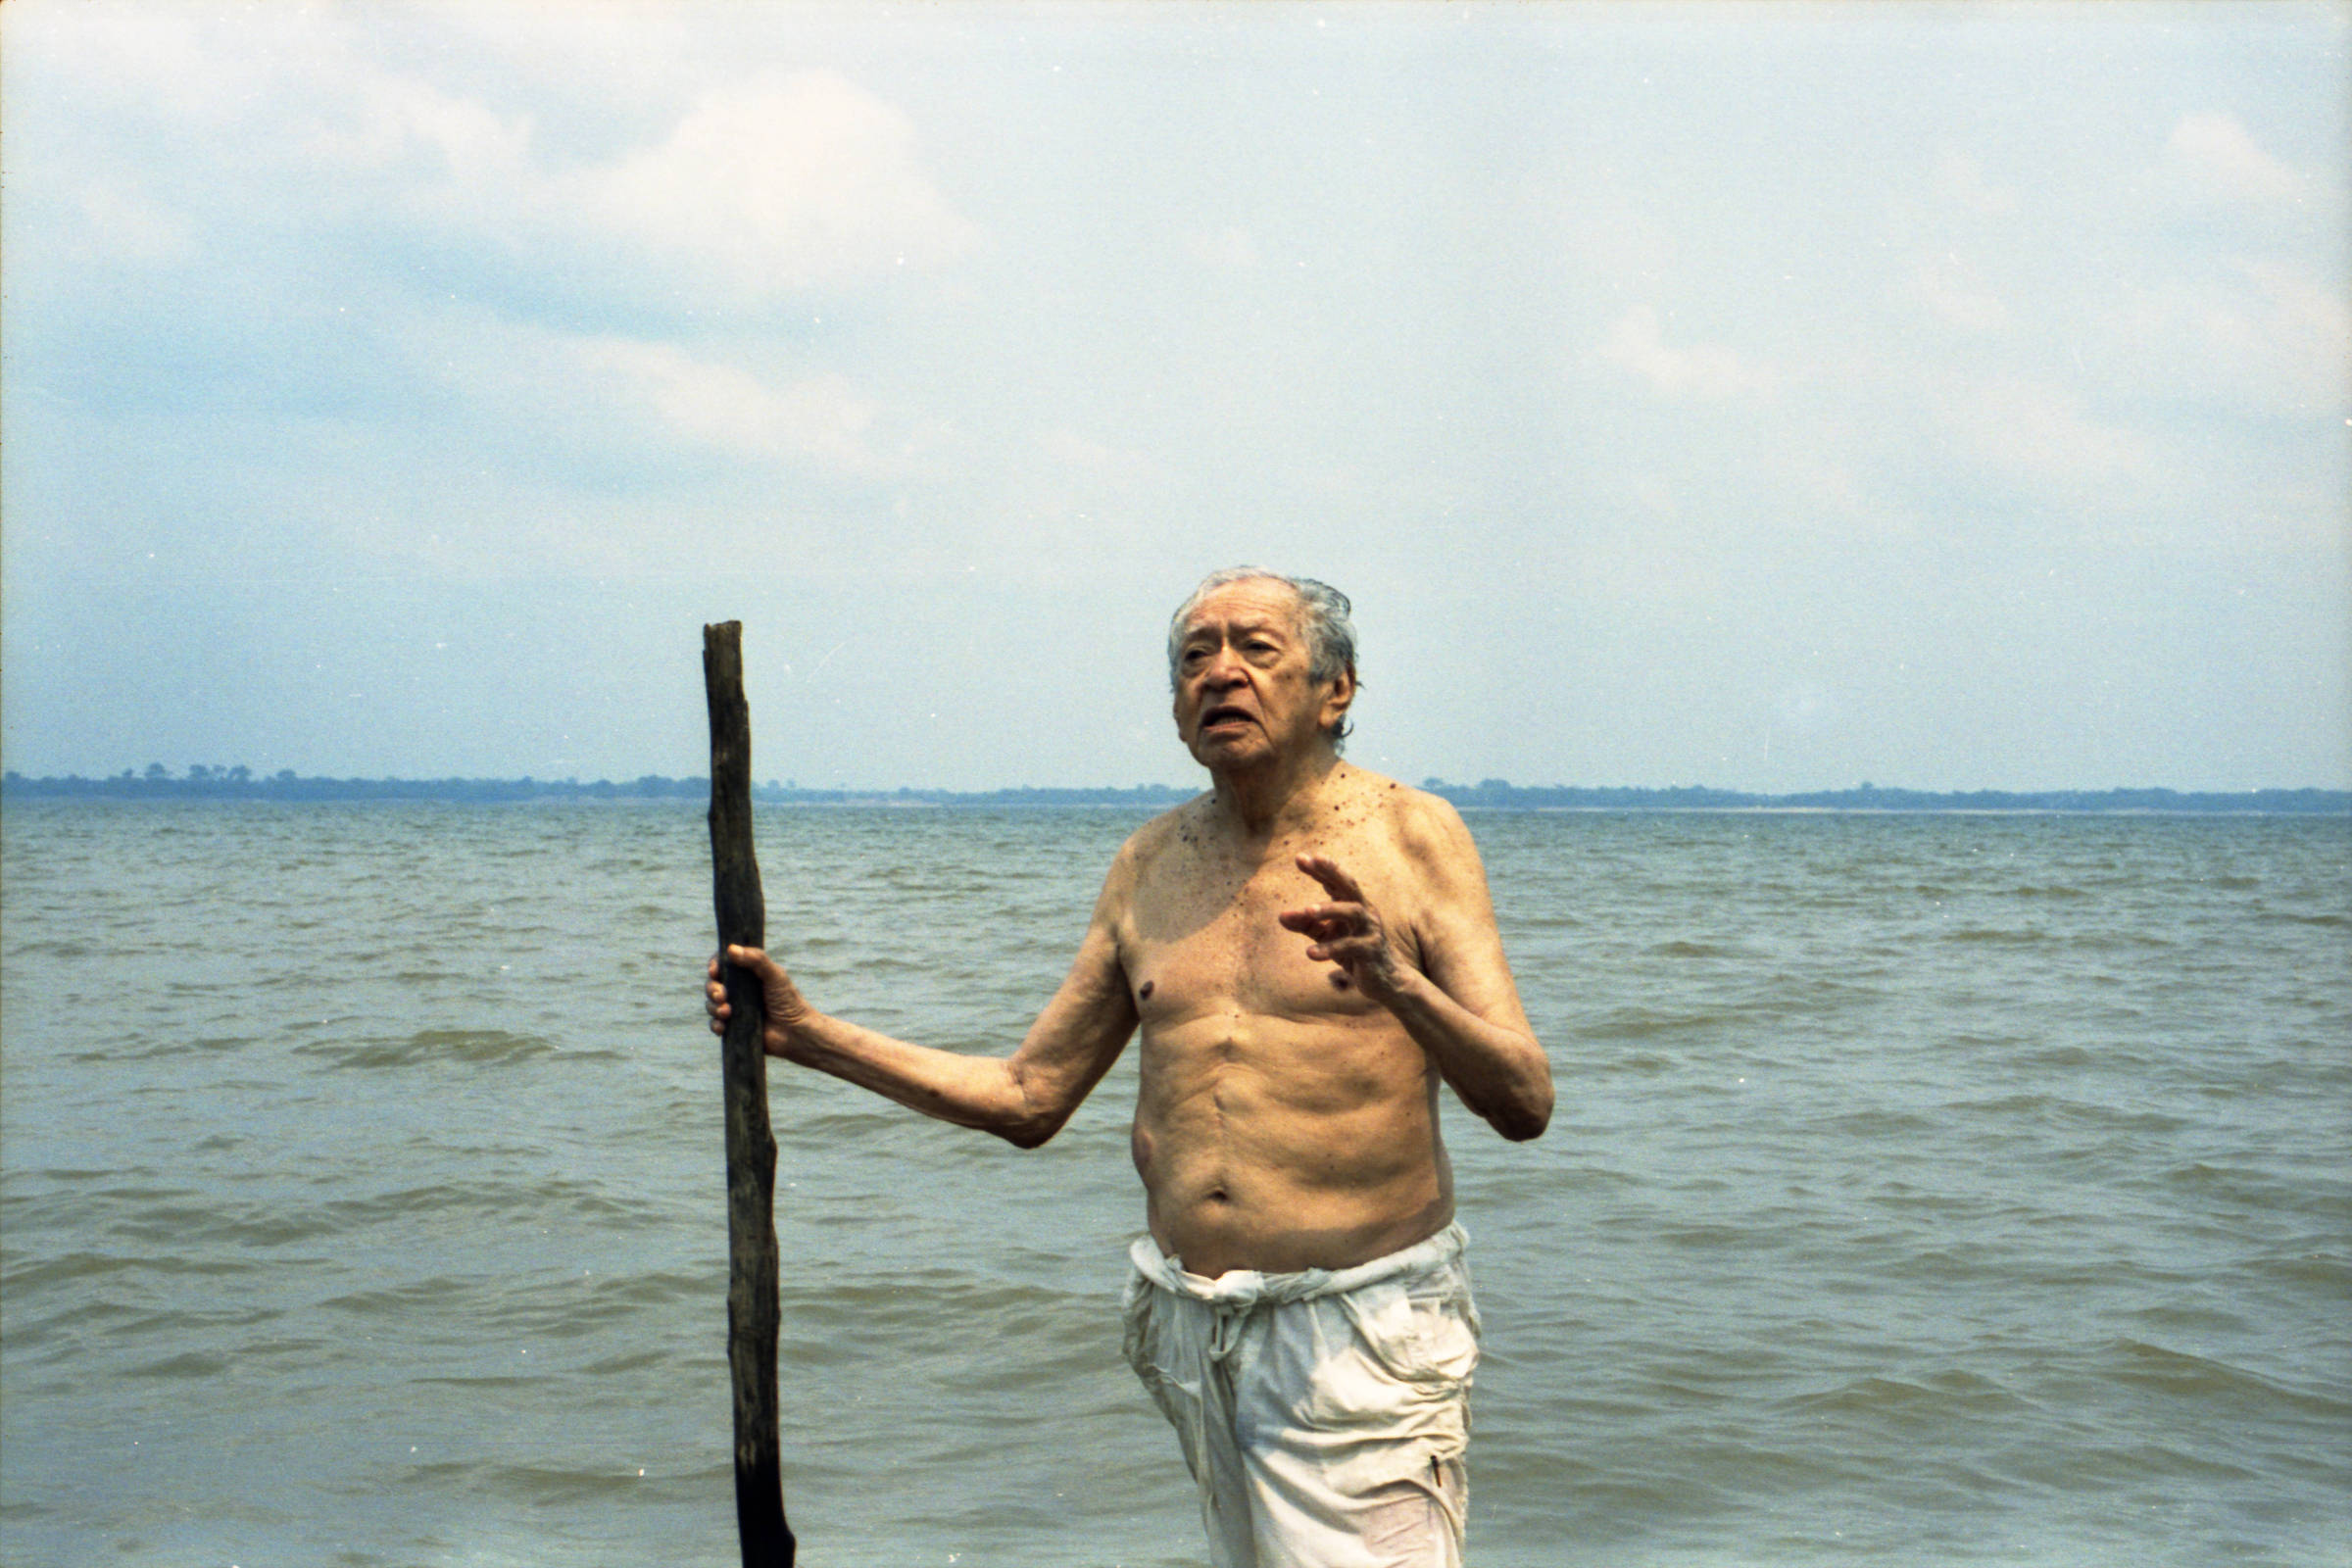 Morre Thiago de Mello, poeta que lutou pela Amazônia, aos 95 anos - 14/01/2022 - Ilustrada - Folha